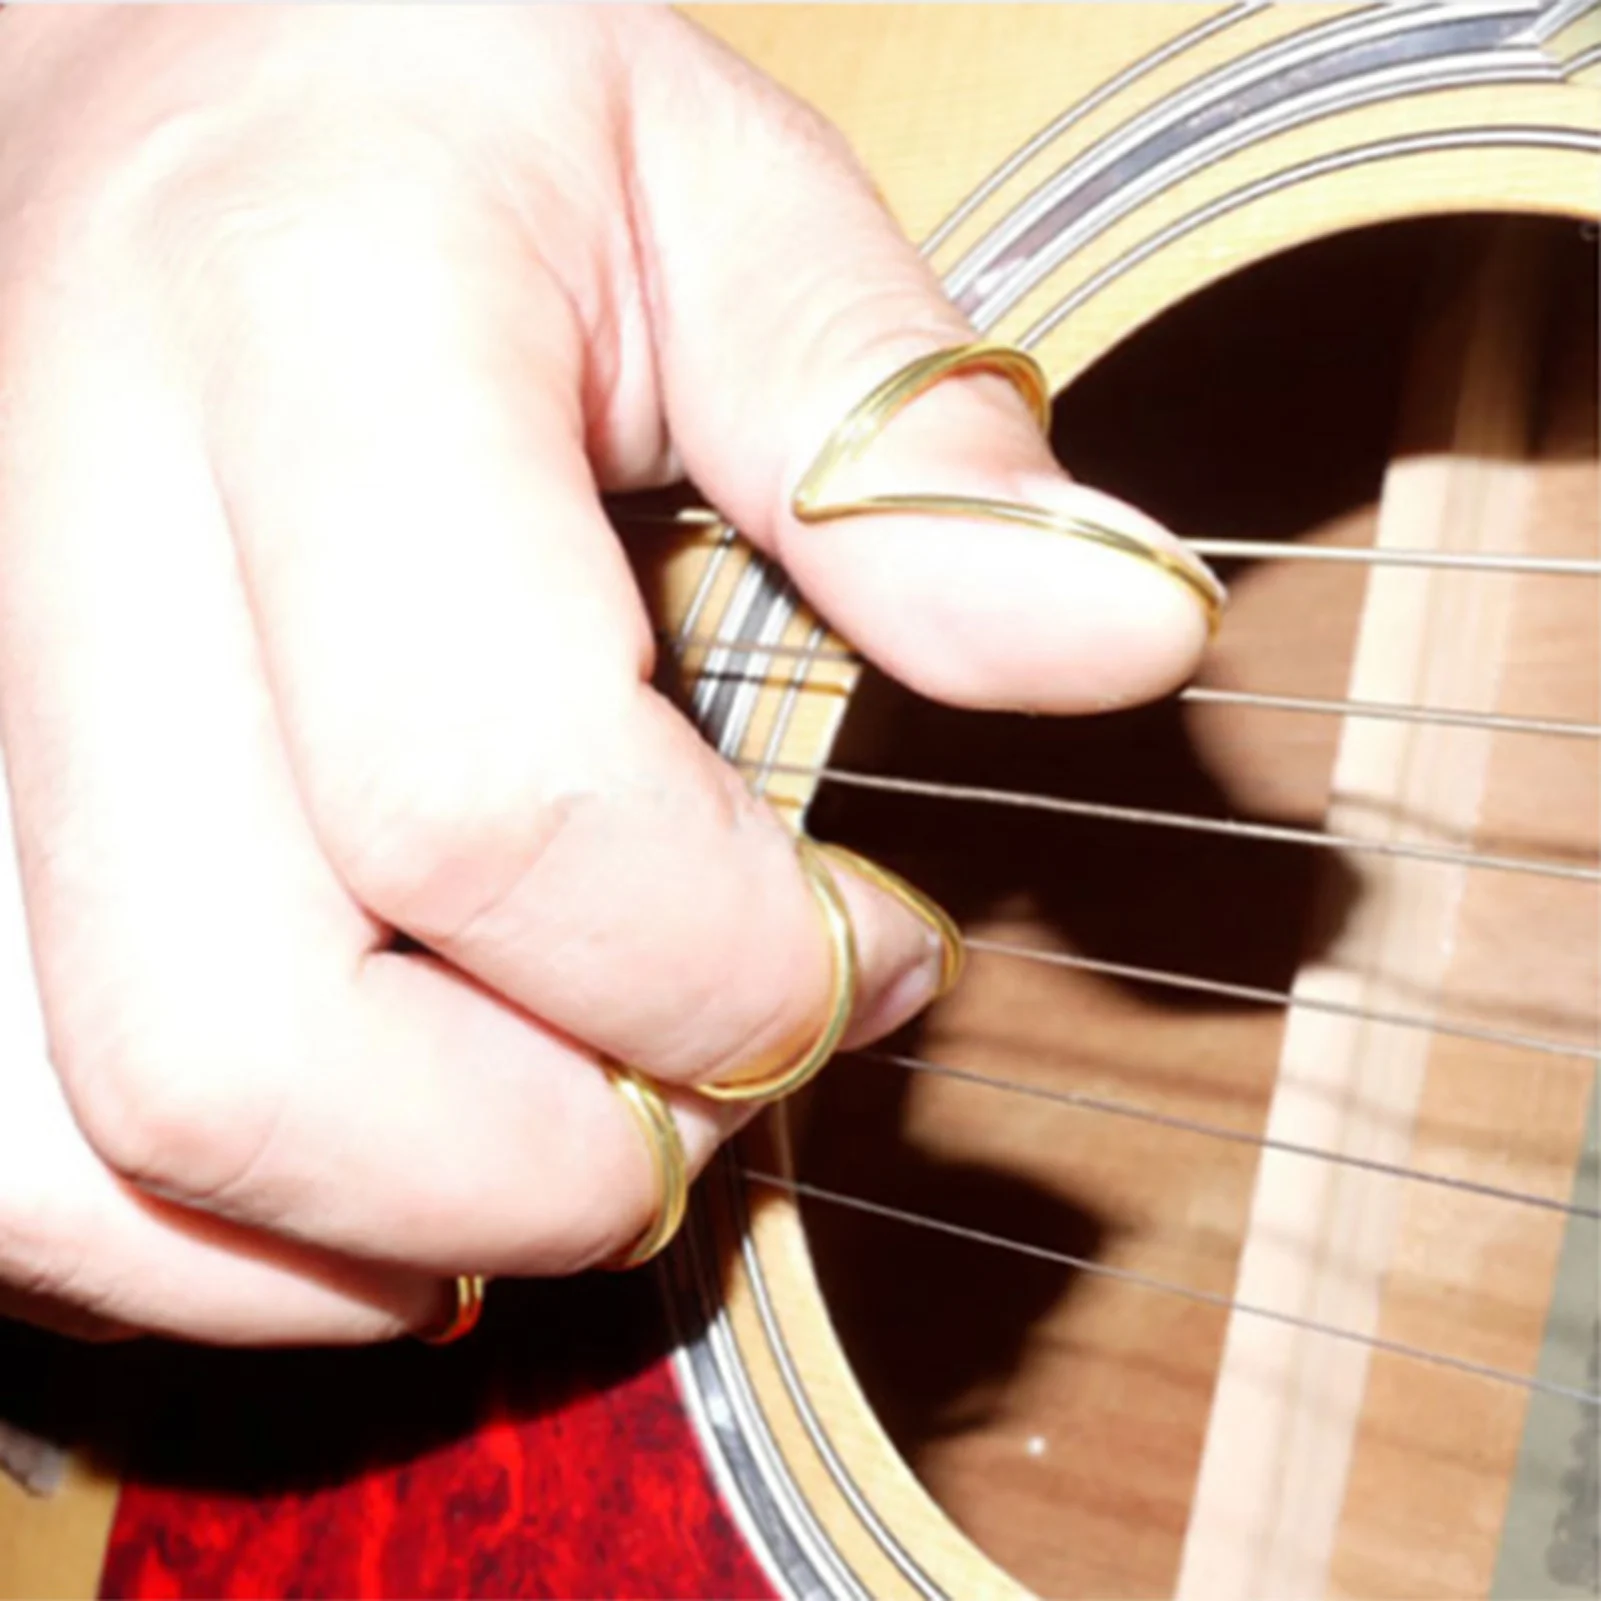 Dedo Fingerstyle Polegar Picaretas do Polegar Ajustável, Pega o Dedo Pega a Palheta de Violão de Baixo do Banjo